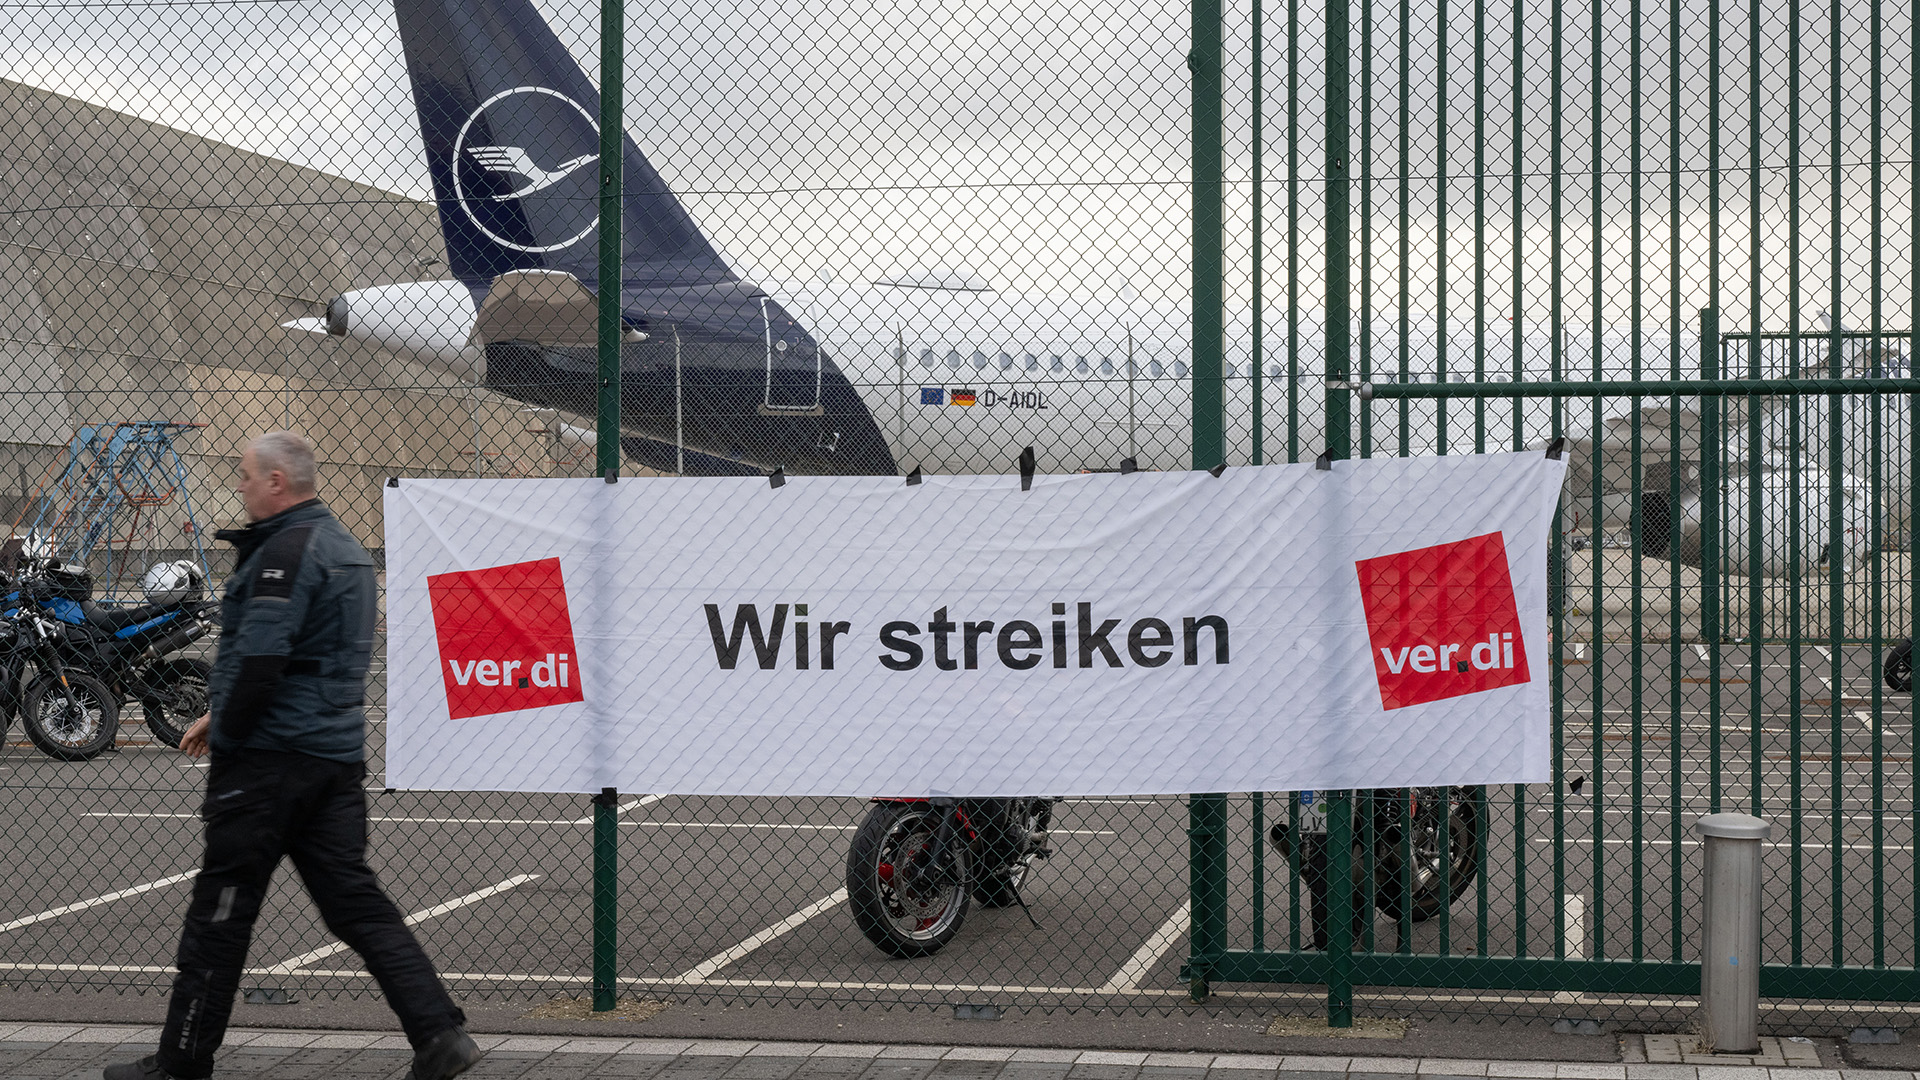 Archivbild: Im Tarifkonflikt um das Lufthansa-Bodenpersonal hat die Gewerkschaft Verdi einen mehrtägigen Warnstreik angekündigt. (Quelle: dpa/Roessler)